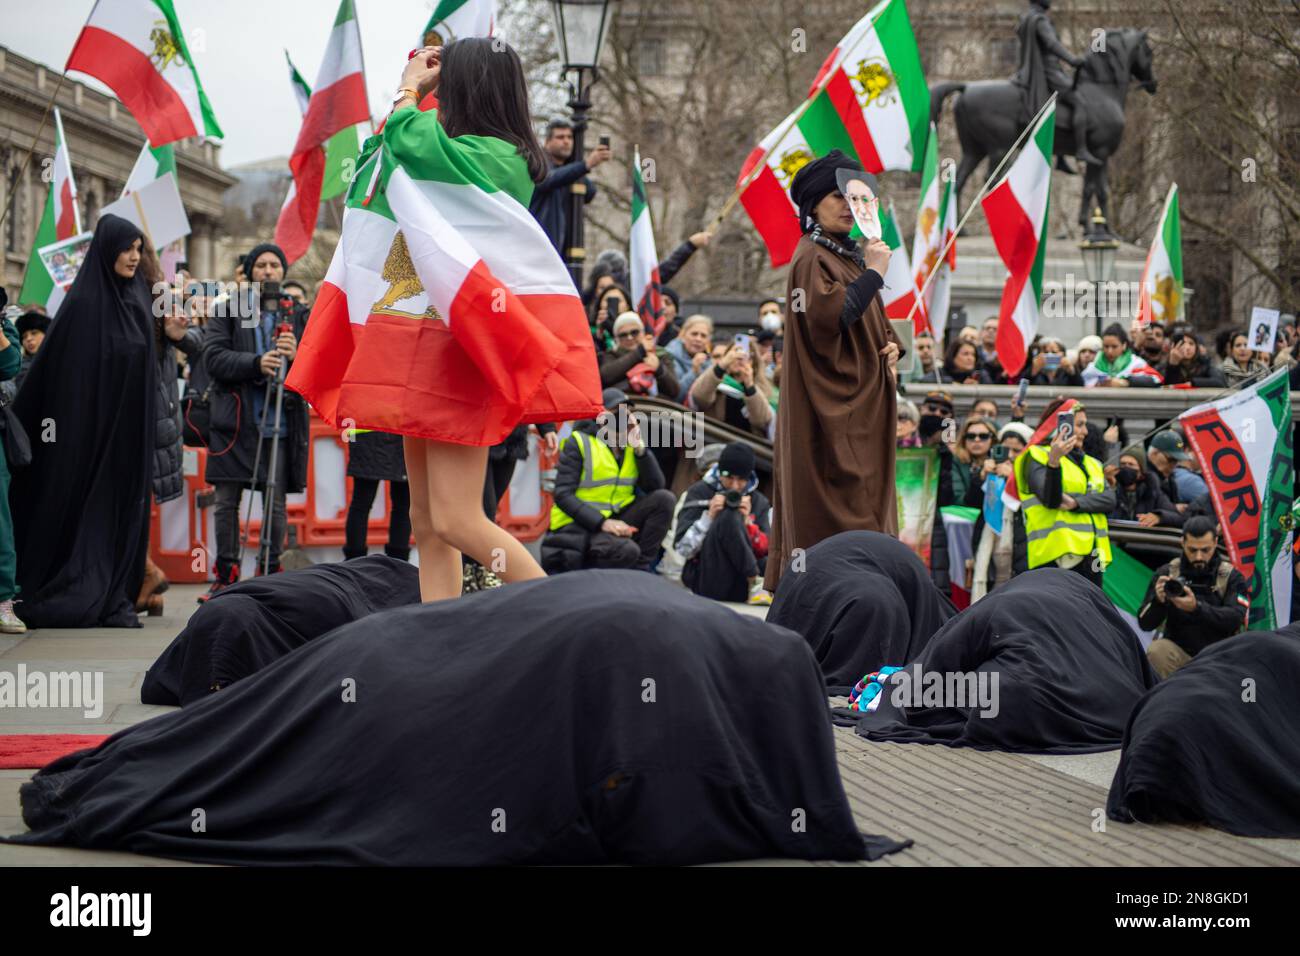 Londra, Regno Unito - 11 febbraio 2023: Esecuzione di una battaglia tra gli Ayatollah e una ragazza iraniana su hijab e libertà. Oggi ricorre il 44th° anniversario della Rivoluzione islamica in Iran. Dopo più di cinque mesi di continua protesta a sostegno della donna, della vita, del movimento per la libertà, migliaia di manifestanti si sono riuniti a Trafalgar Sq. Denunciare il regime in Iran. I manifestanti tenevano la bandiera Shir-o-Khorshid (Leone e Sole) dell'Iran. Questa bandiera è stata una parte dell'identità nazionale iraniana per secoli, che è stata cambiata dopo la Rivoluzione islamica nel 1979. Credit: Sinai Noor/Alamy Live News Foto Stock